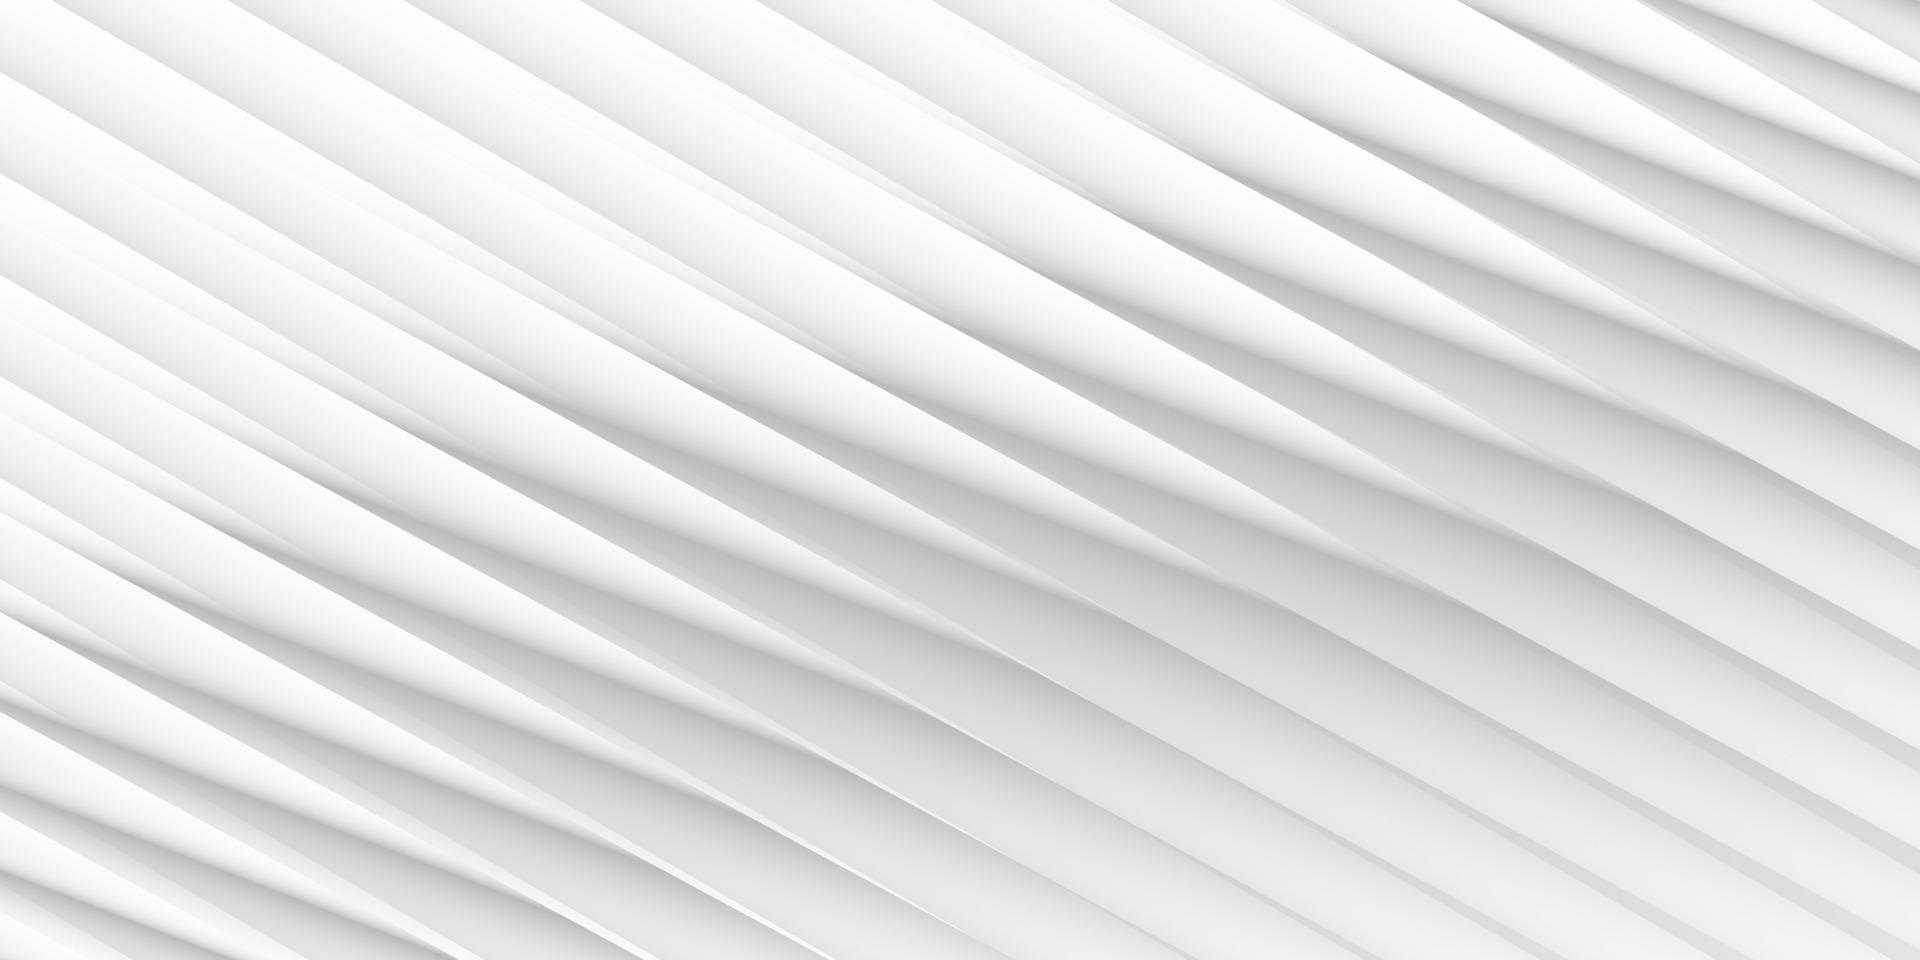 color blanco y gris abstracto, fondo de rayas de diseño moderno. ilustración vectorial vector